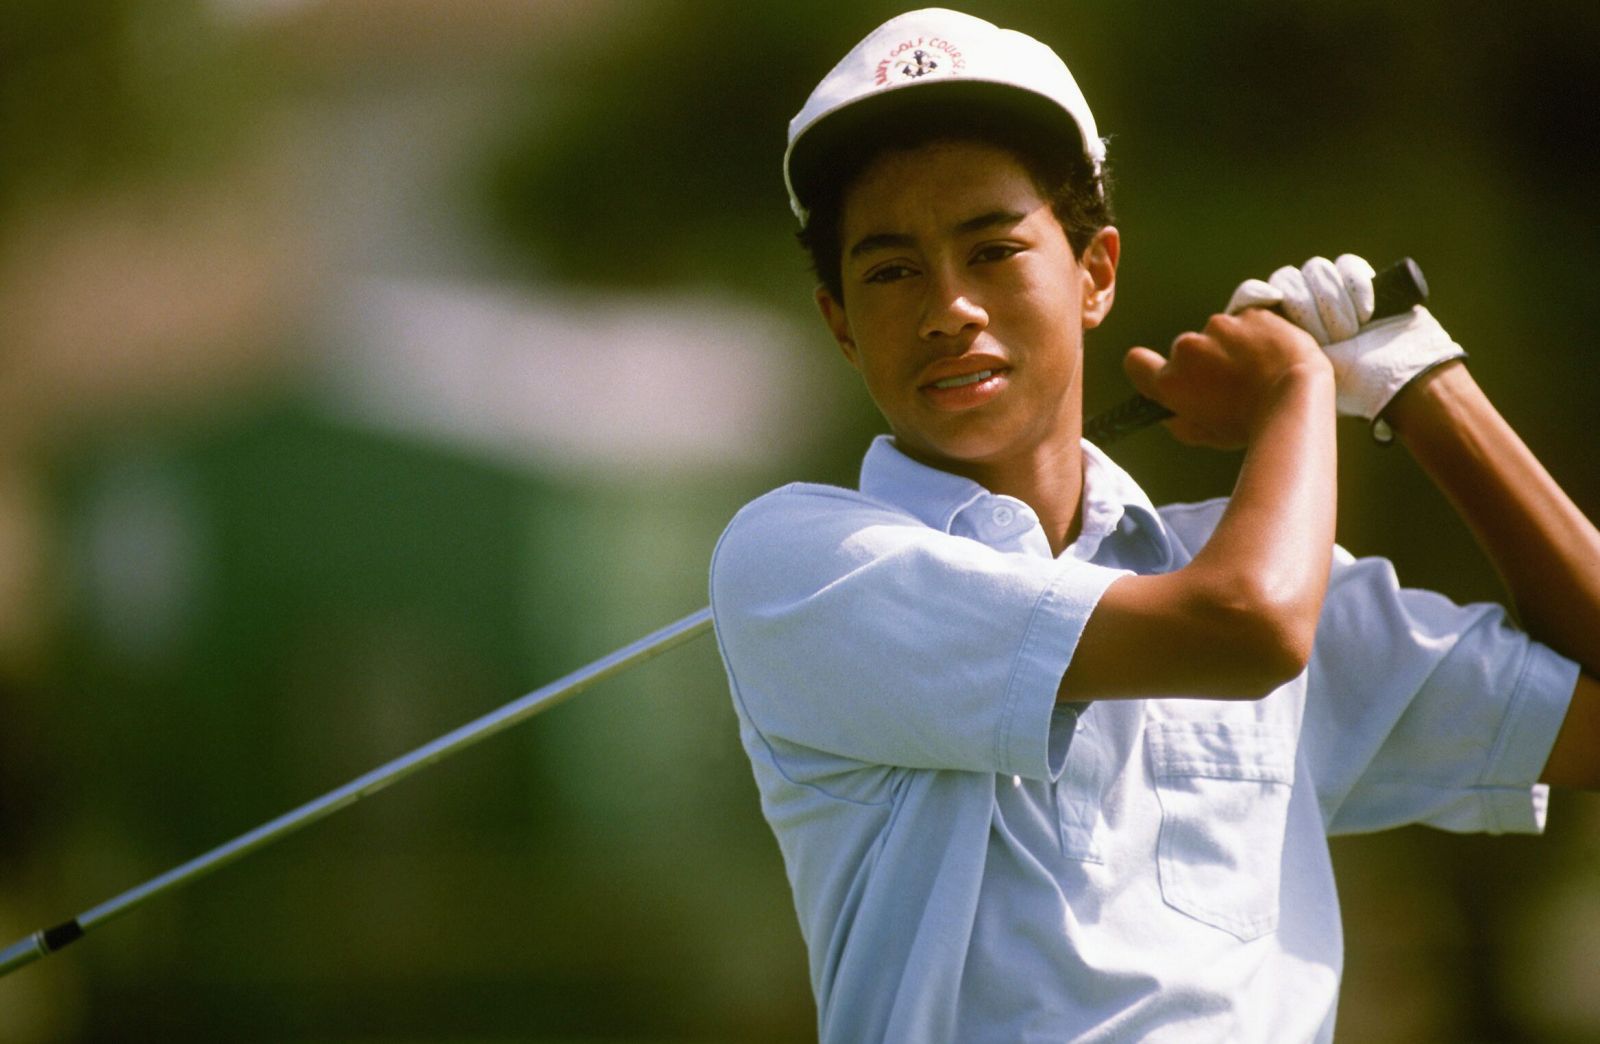 13 tuổi, cậu bé Tiger Woods đã giành giải vô địch lứa tuổi thiếu niên đầu tiên.